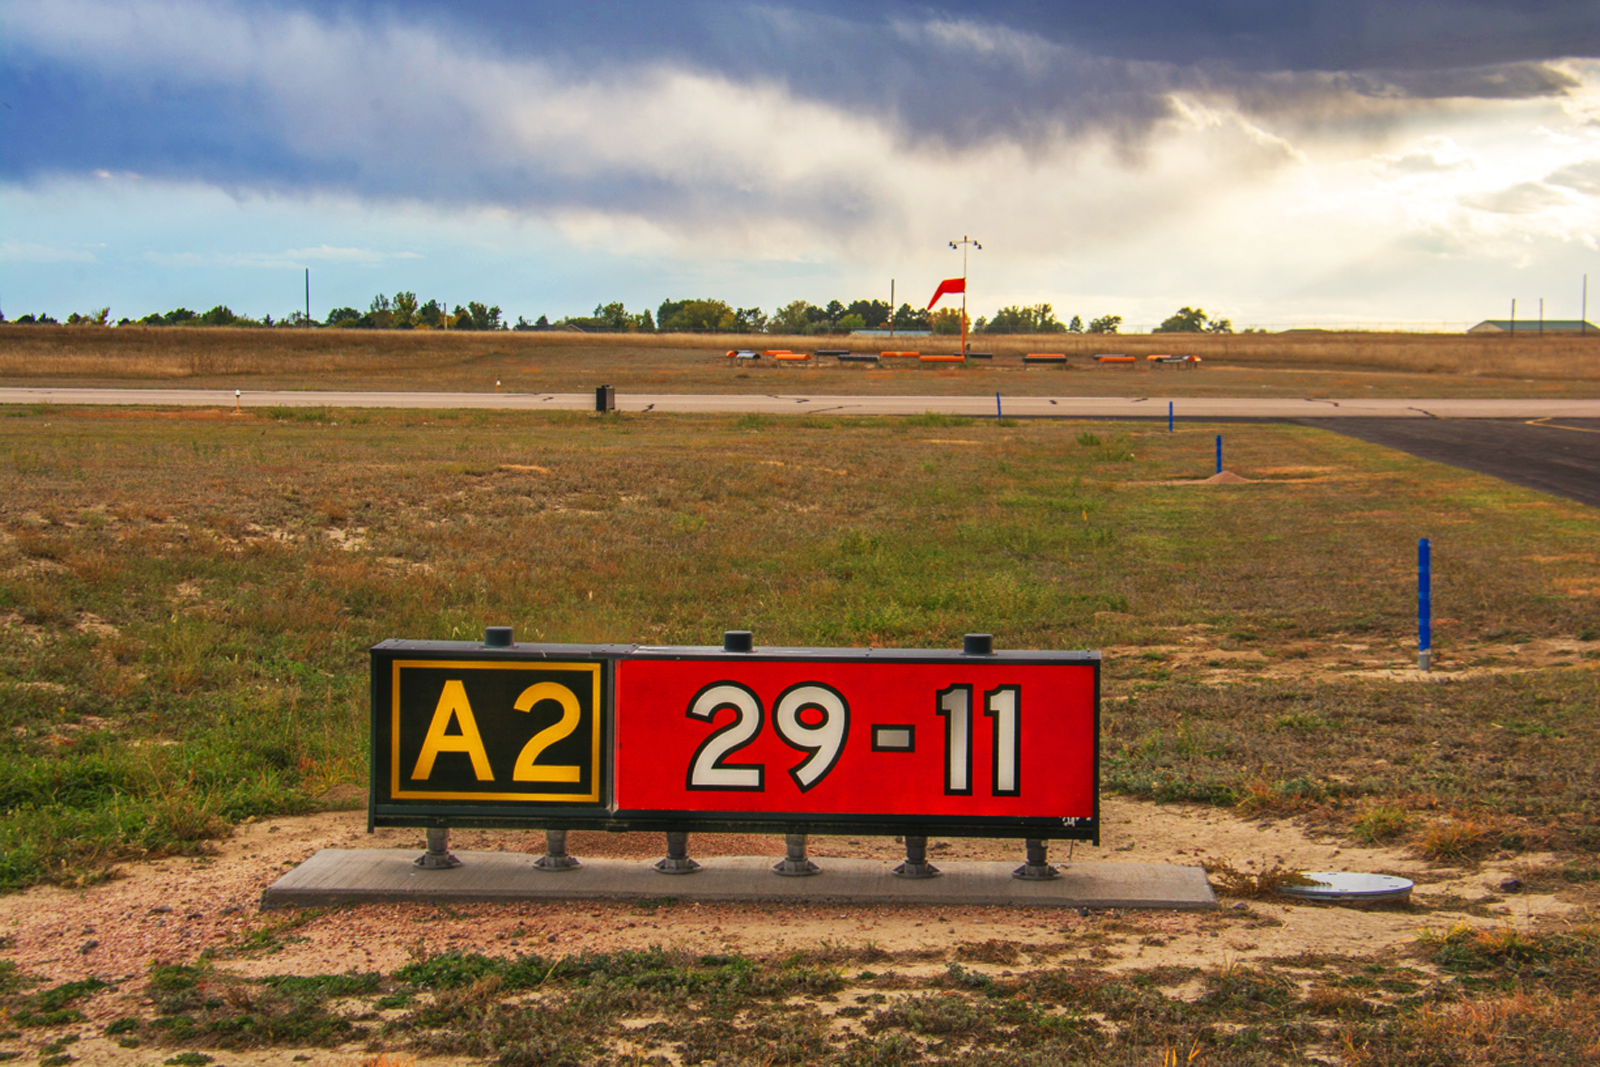 AKO runway/taxiway sign